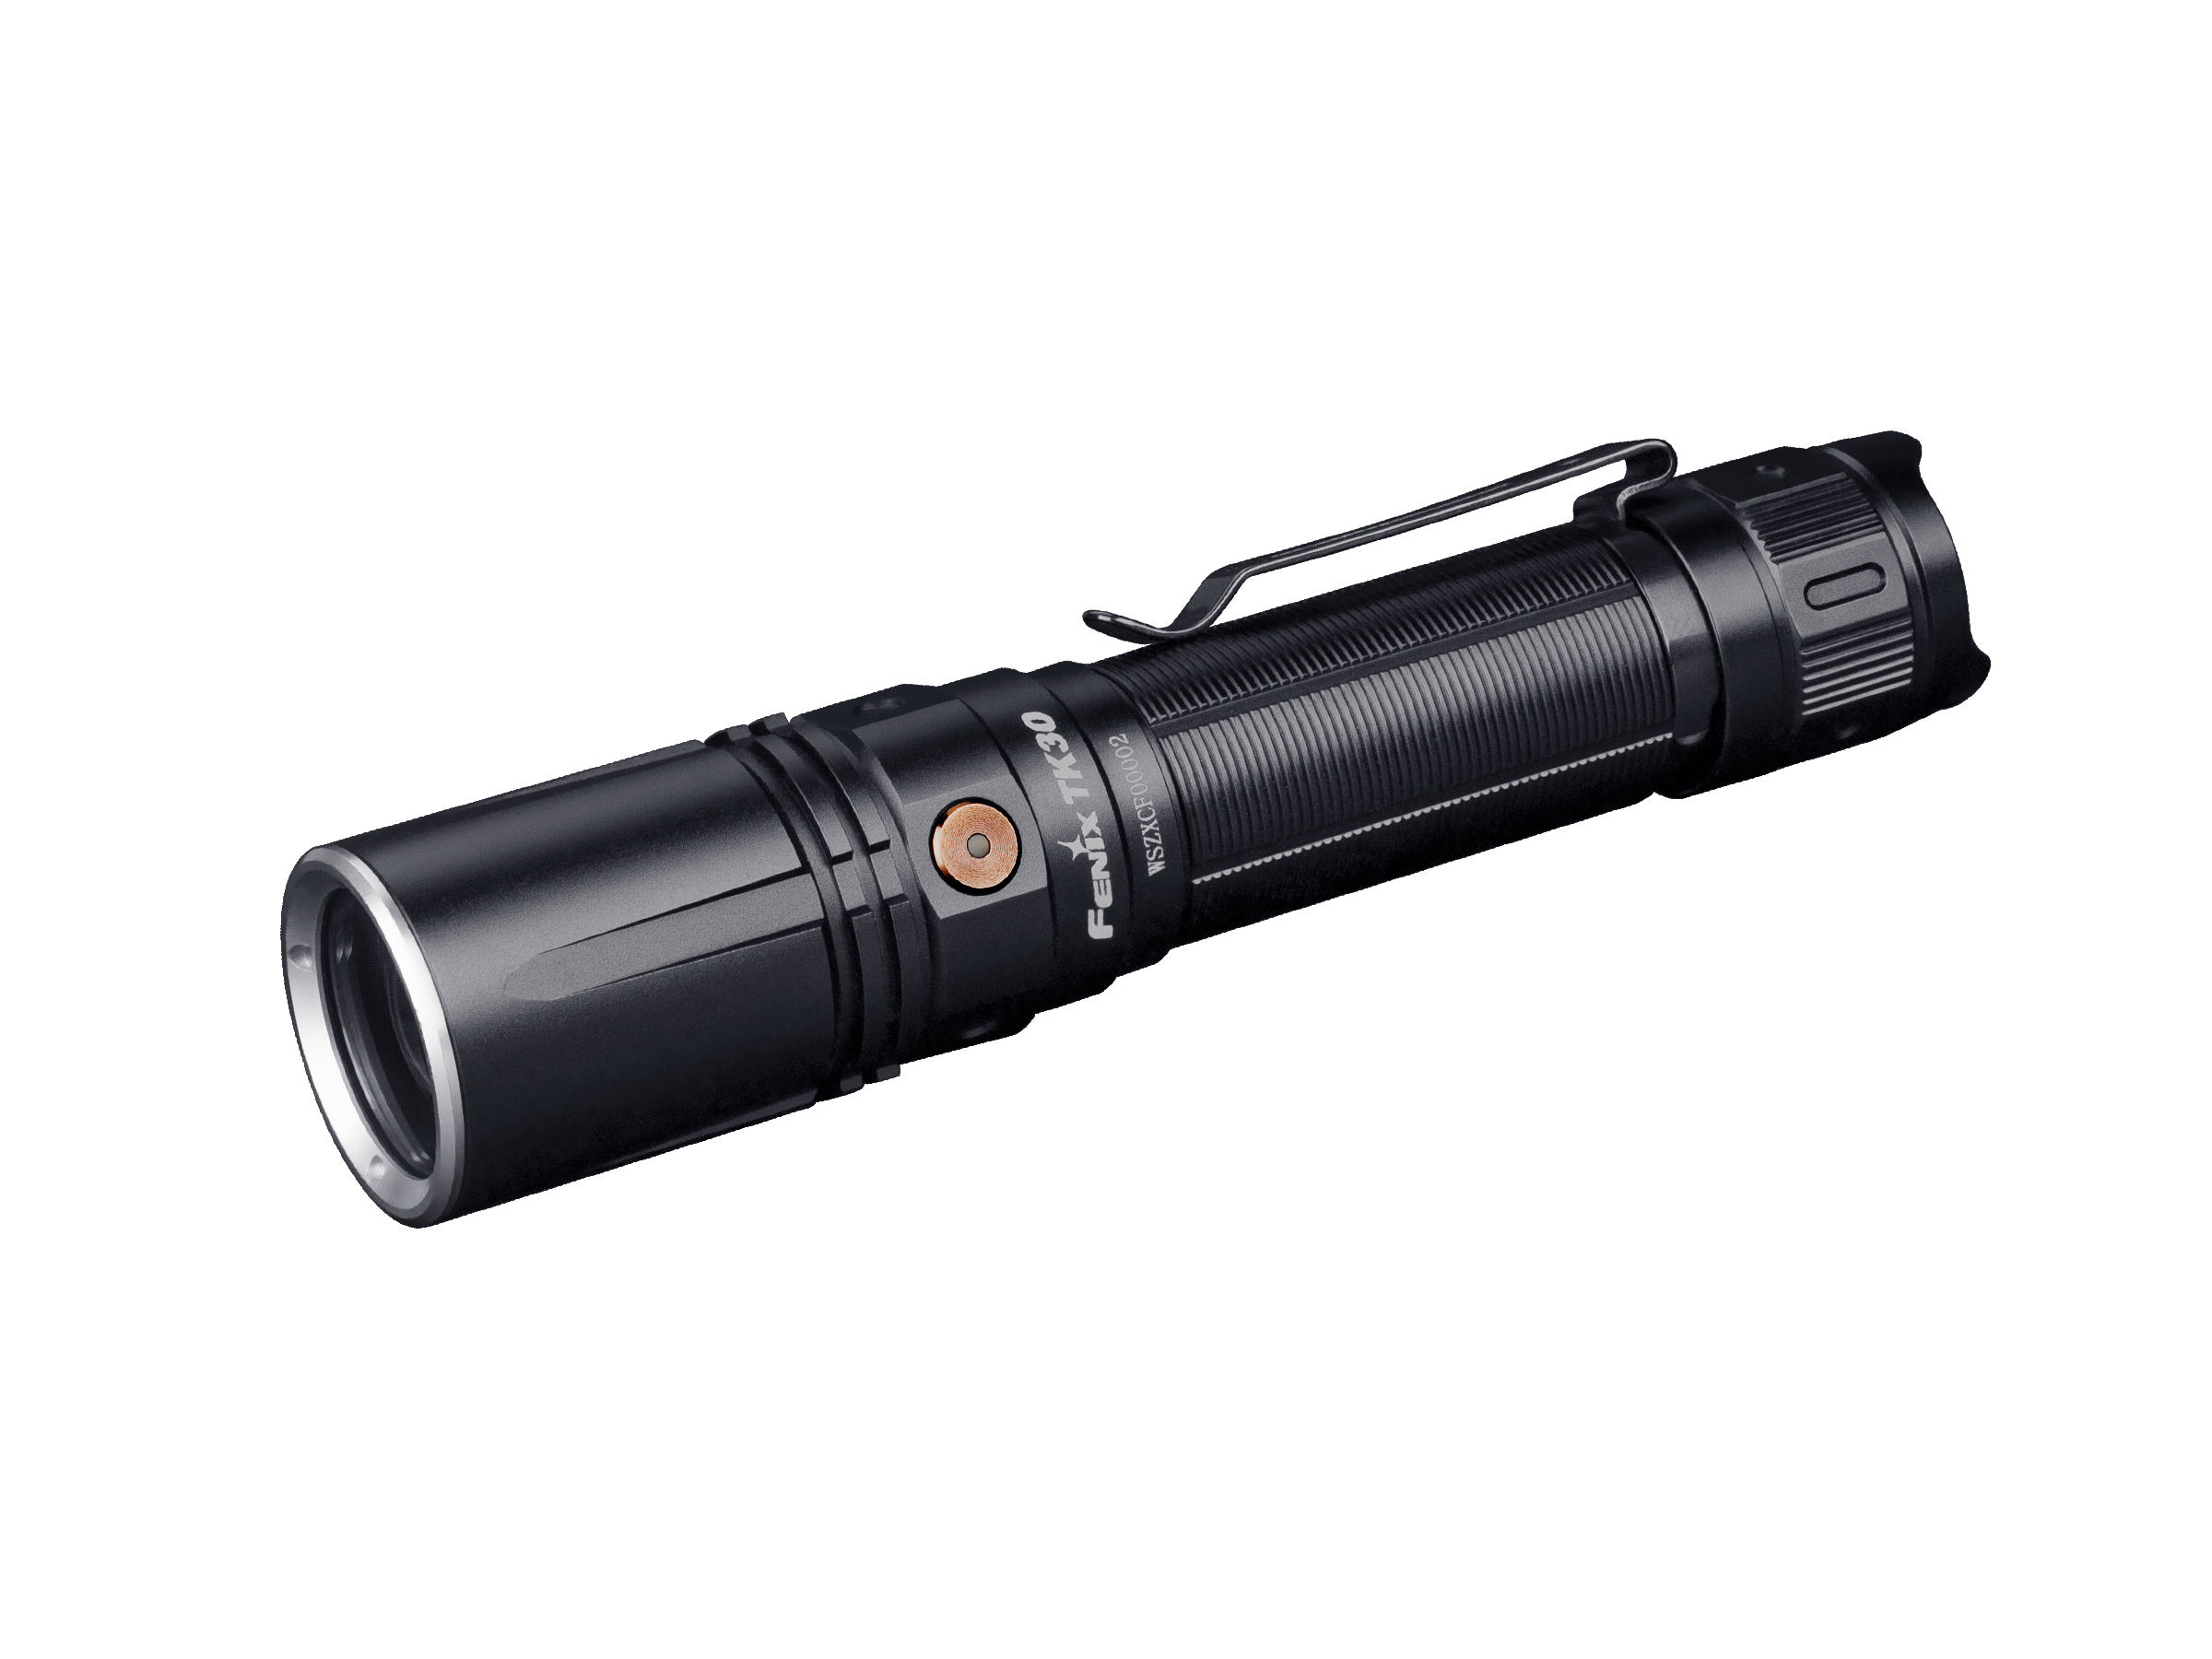 Fenix TK30 White Laser Flashlight